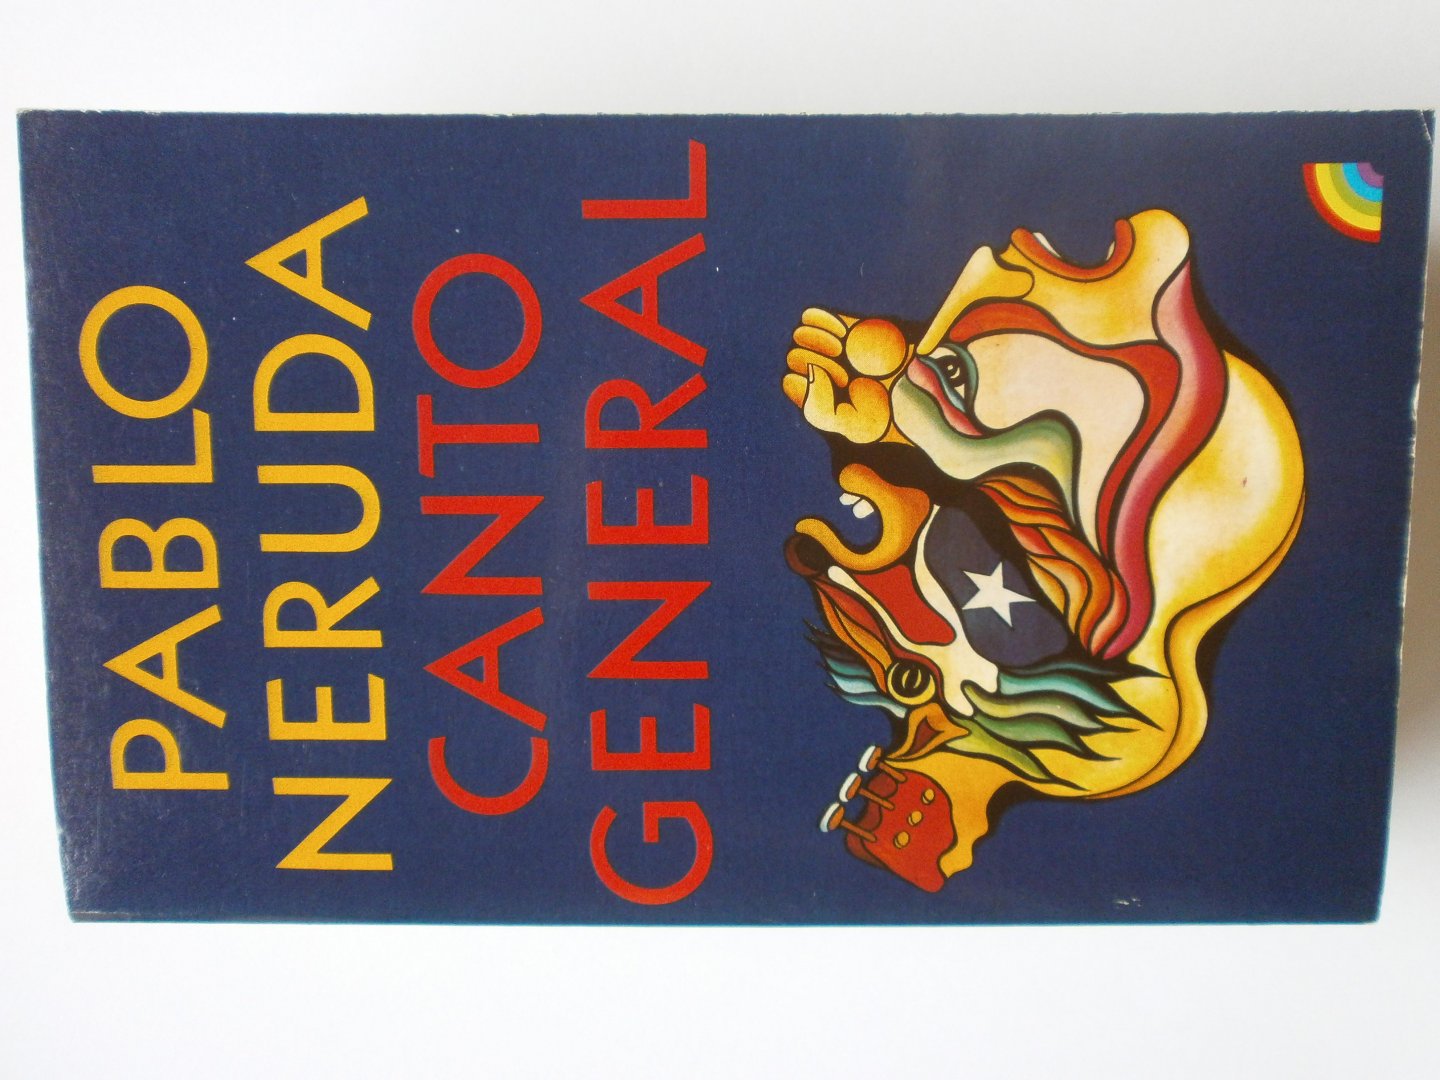 Neruda, Pablo - Canto general